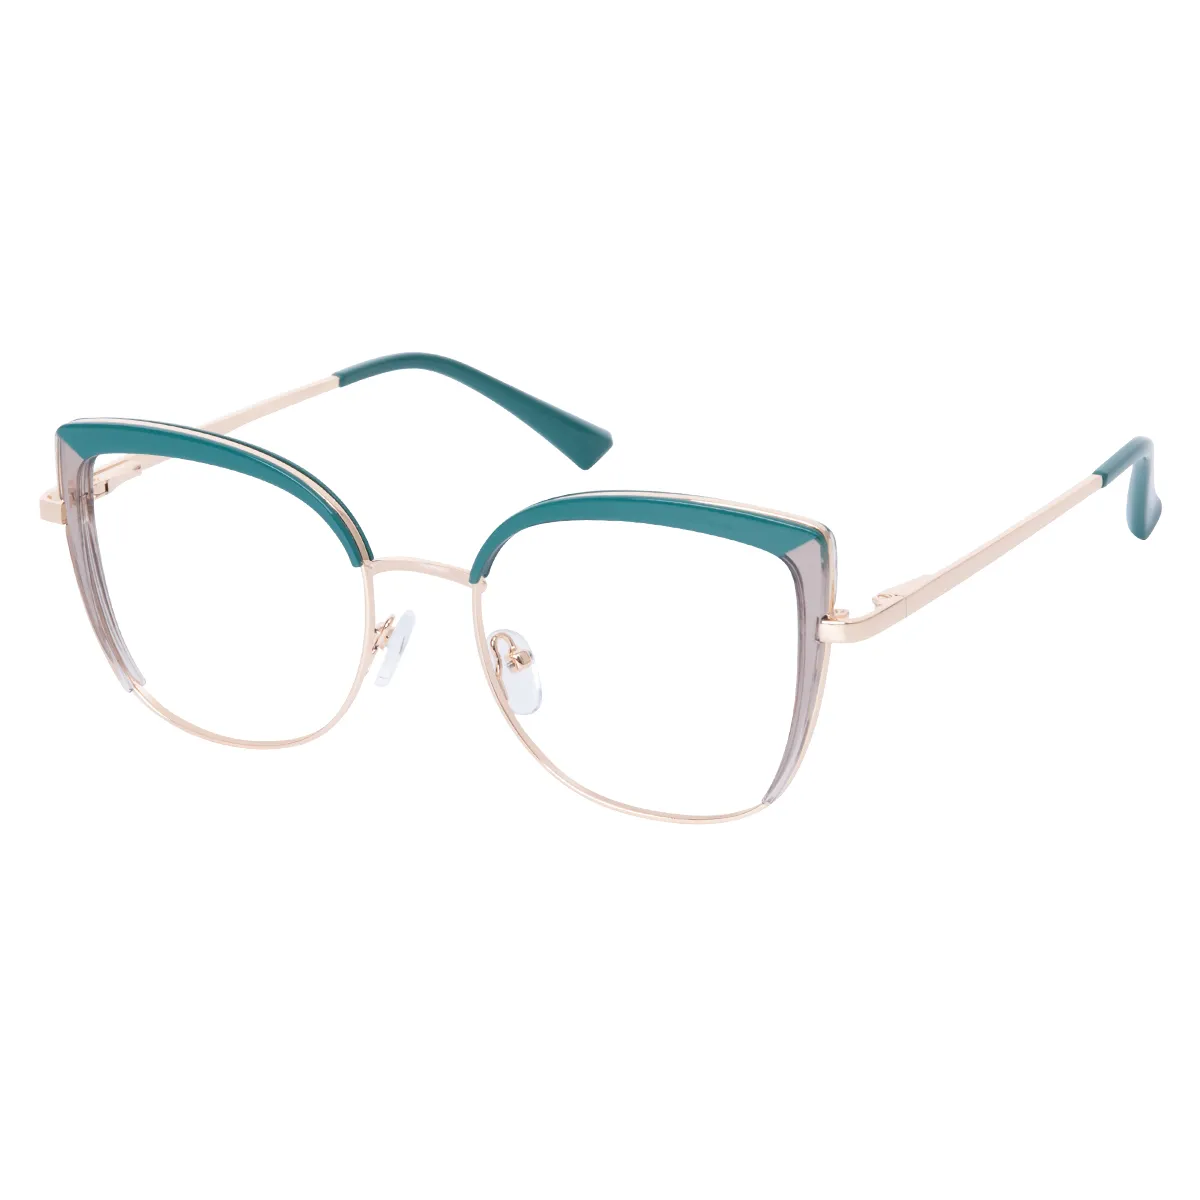 Isolde - Cat-eye Green-Translucent Glasses for Women